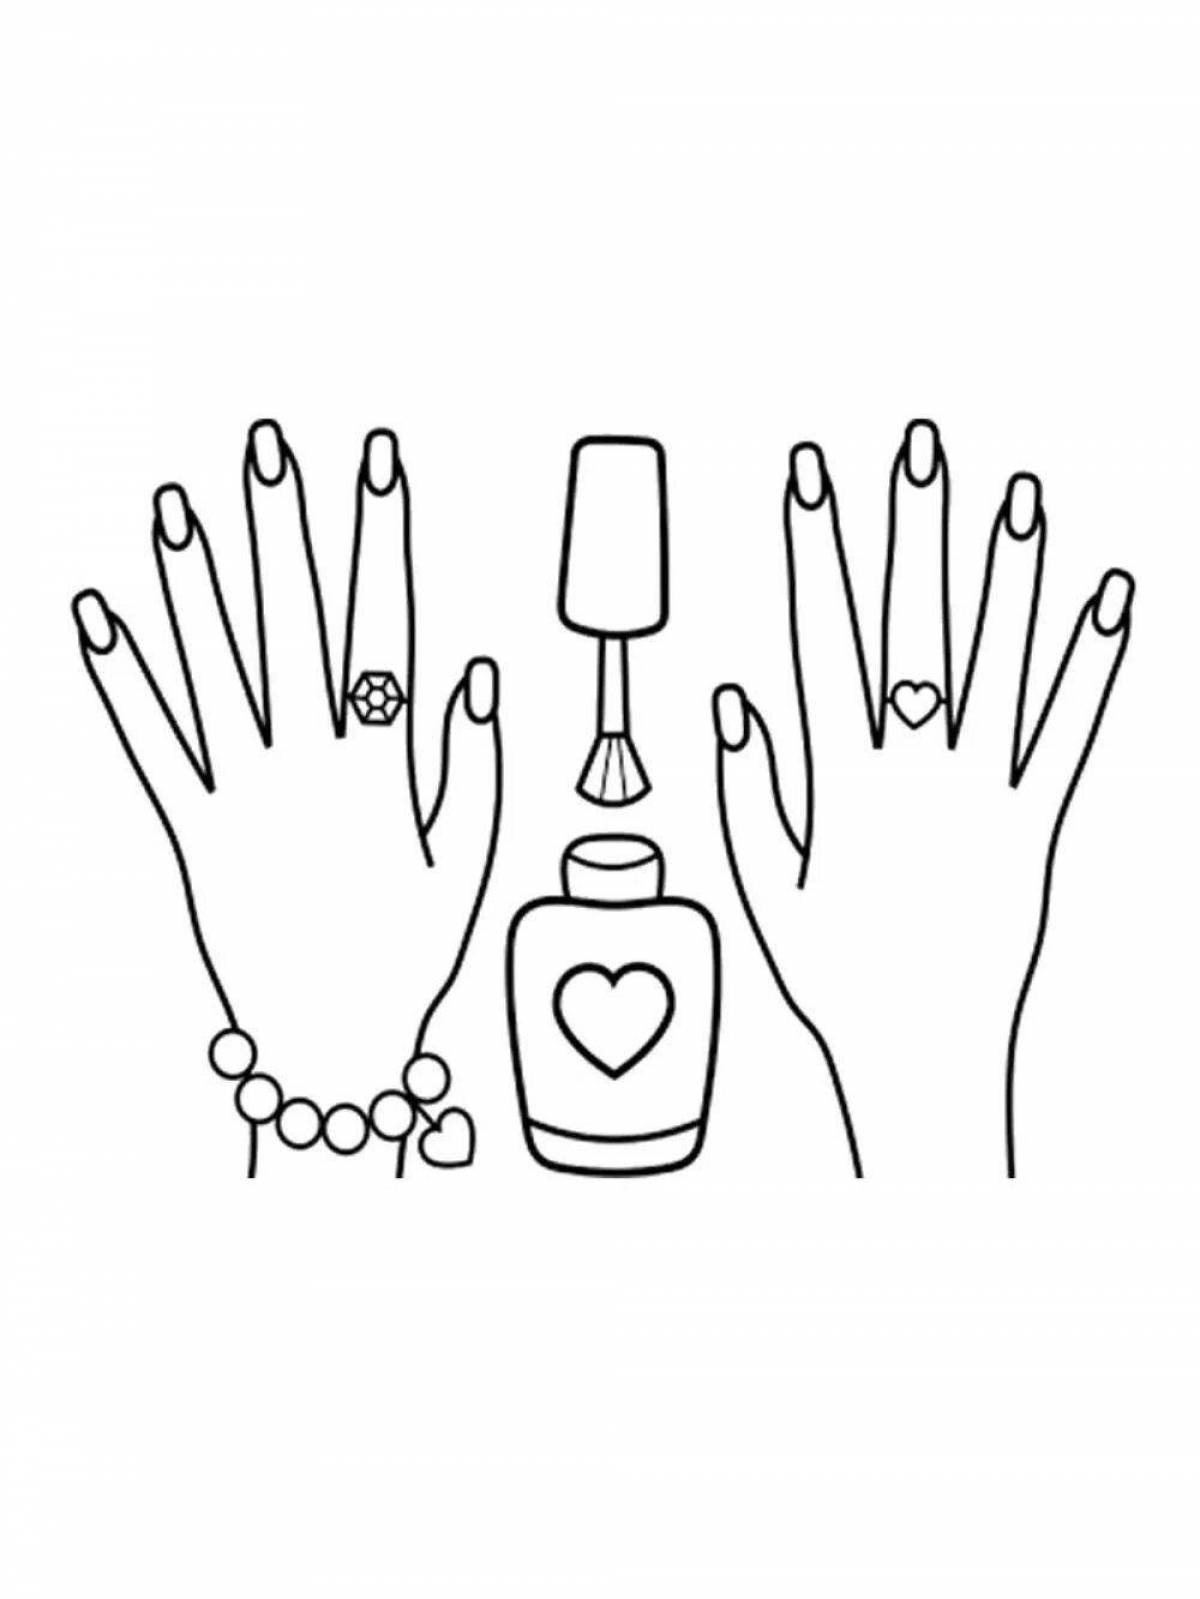 Красочное изображение для раскрашивания ногтей